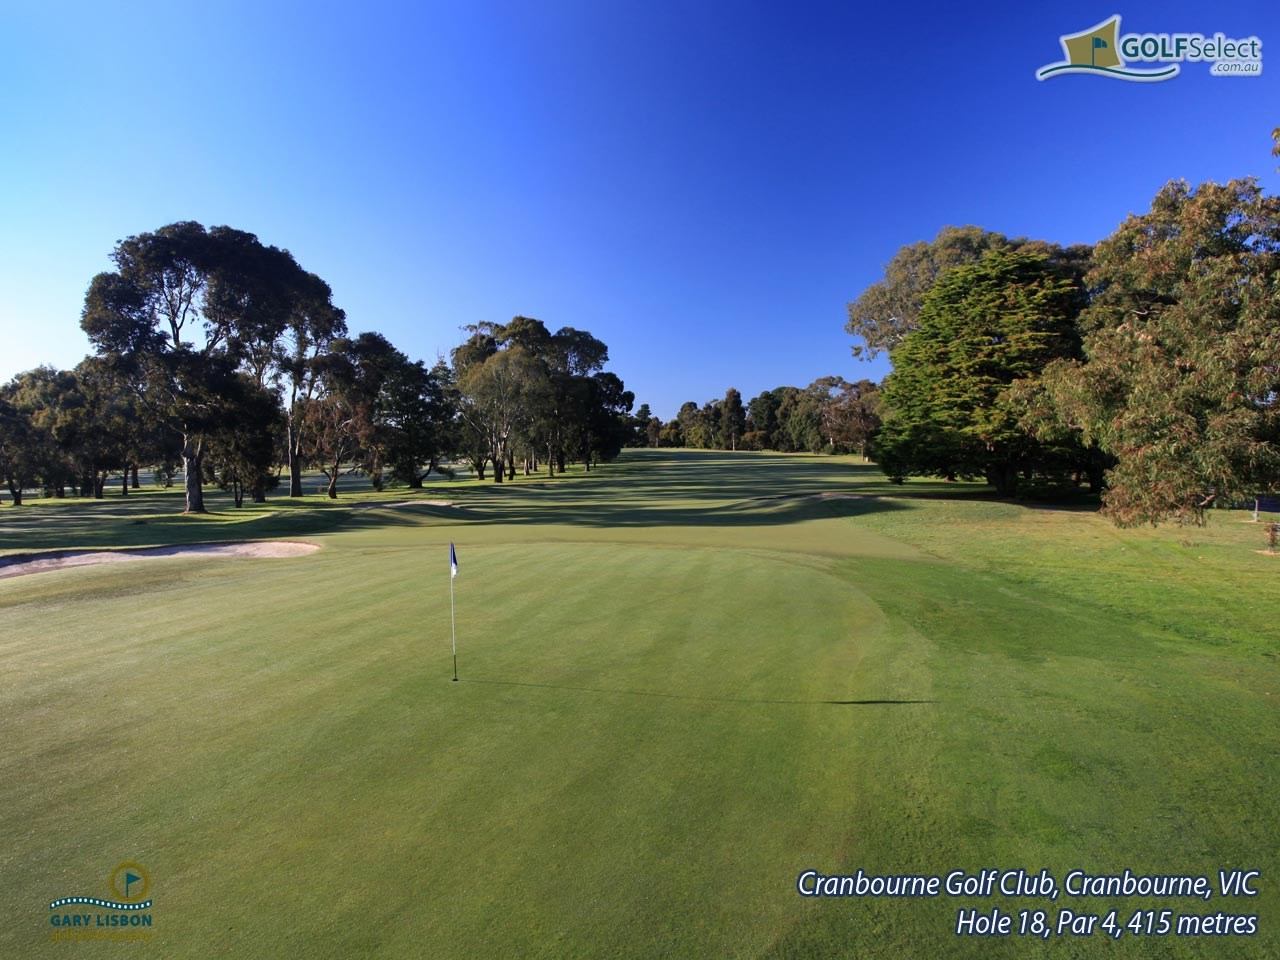 Cranbourne Golf Club Hole 18, Par 4, 415 metres